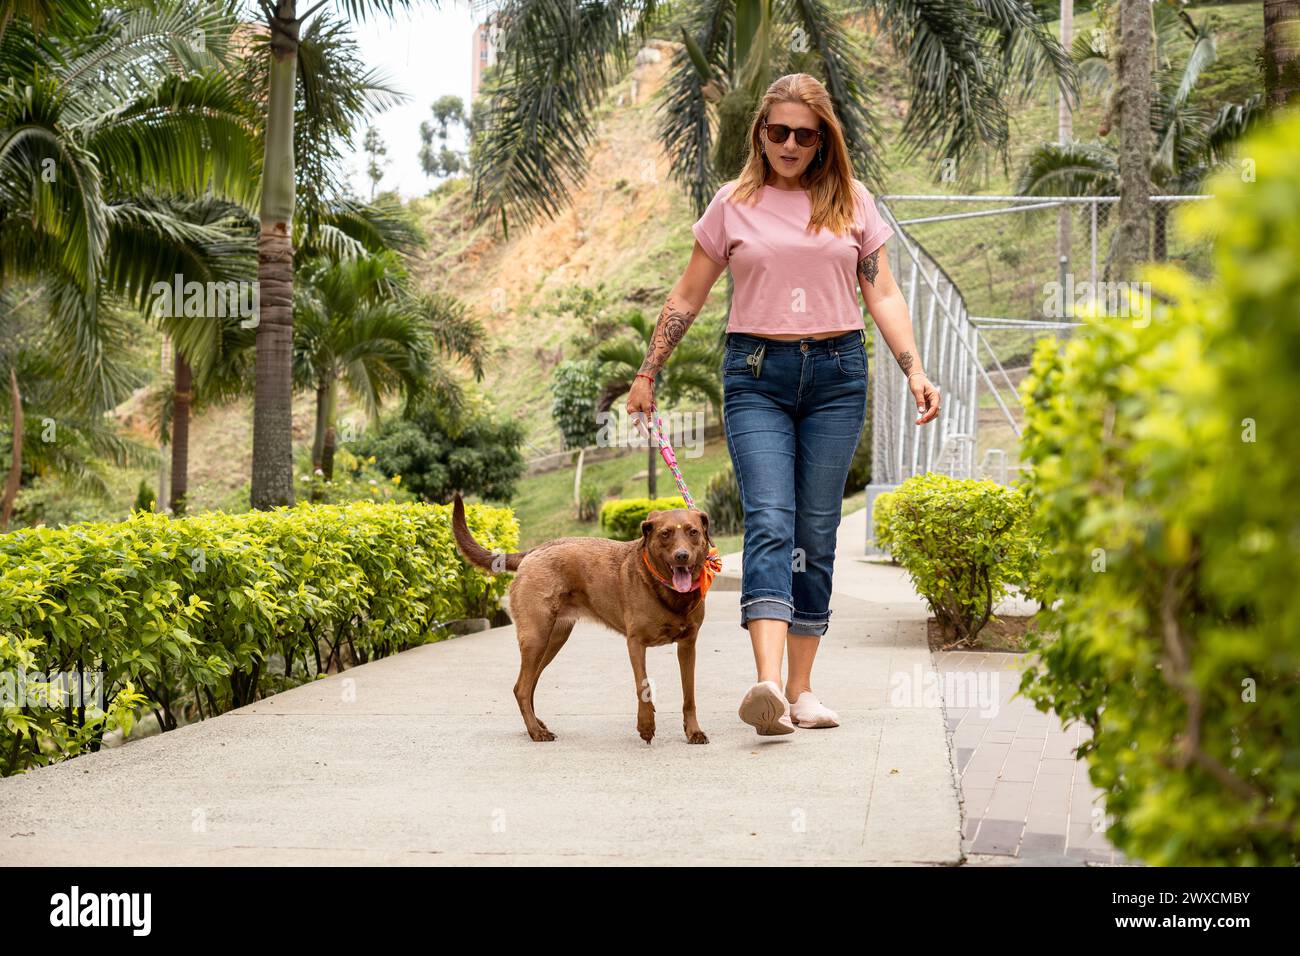 Donna che cammina con il suo cane, vestita casualmente con jeans, una t-shirt rosa e occhiali da sole, in un quartiere privato pieno di piante e palme. Foto Stock